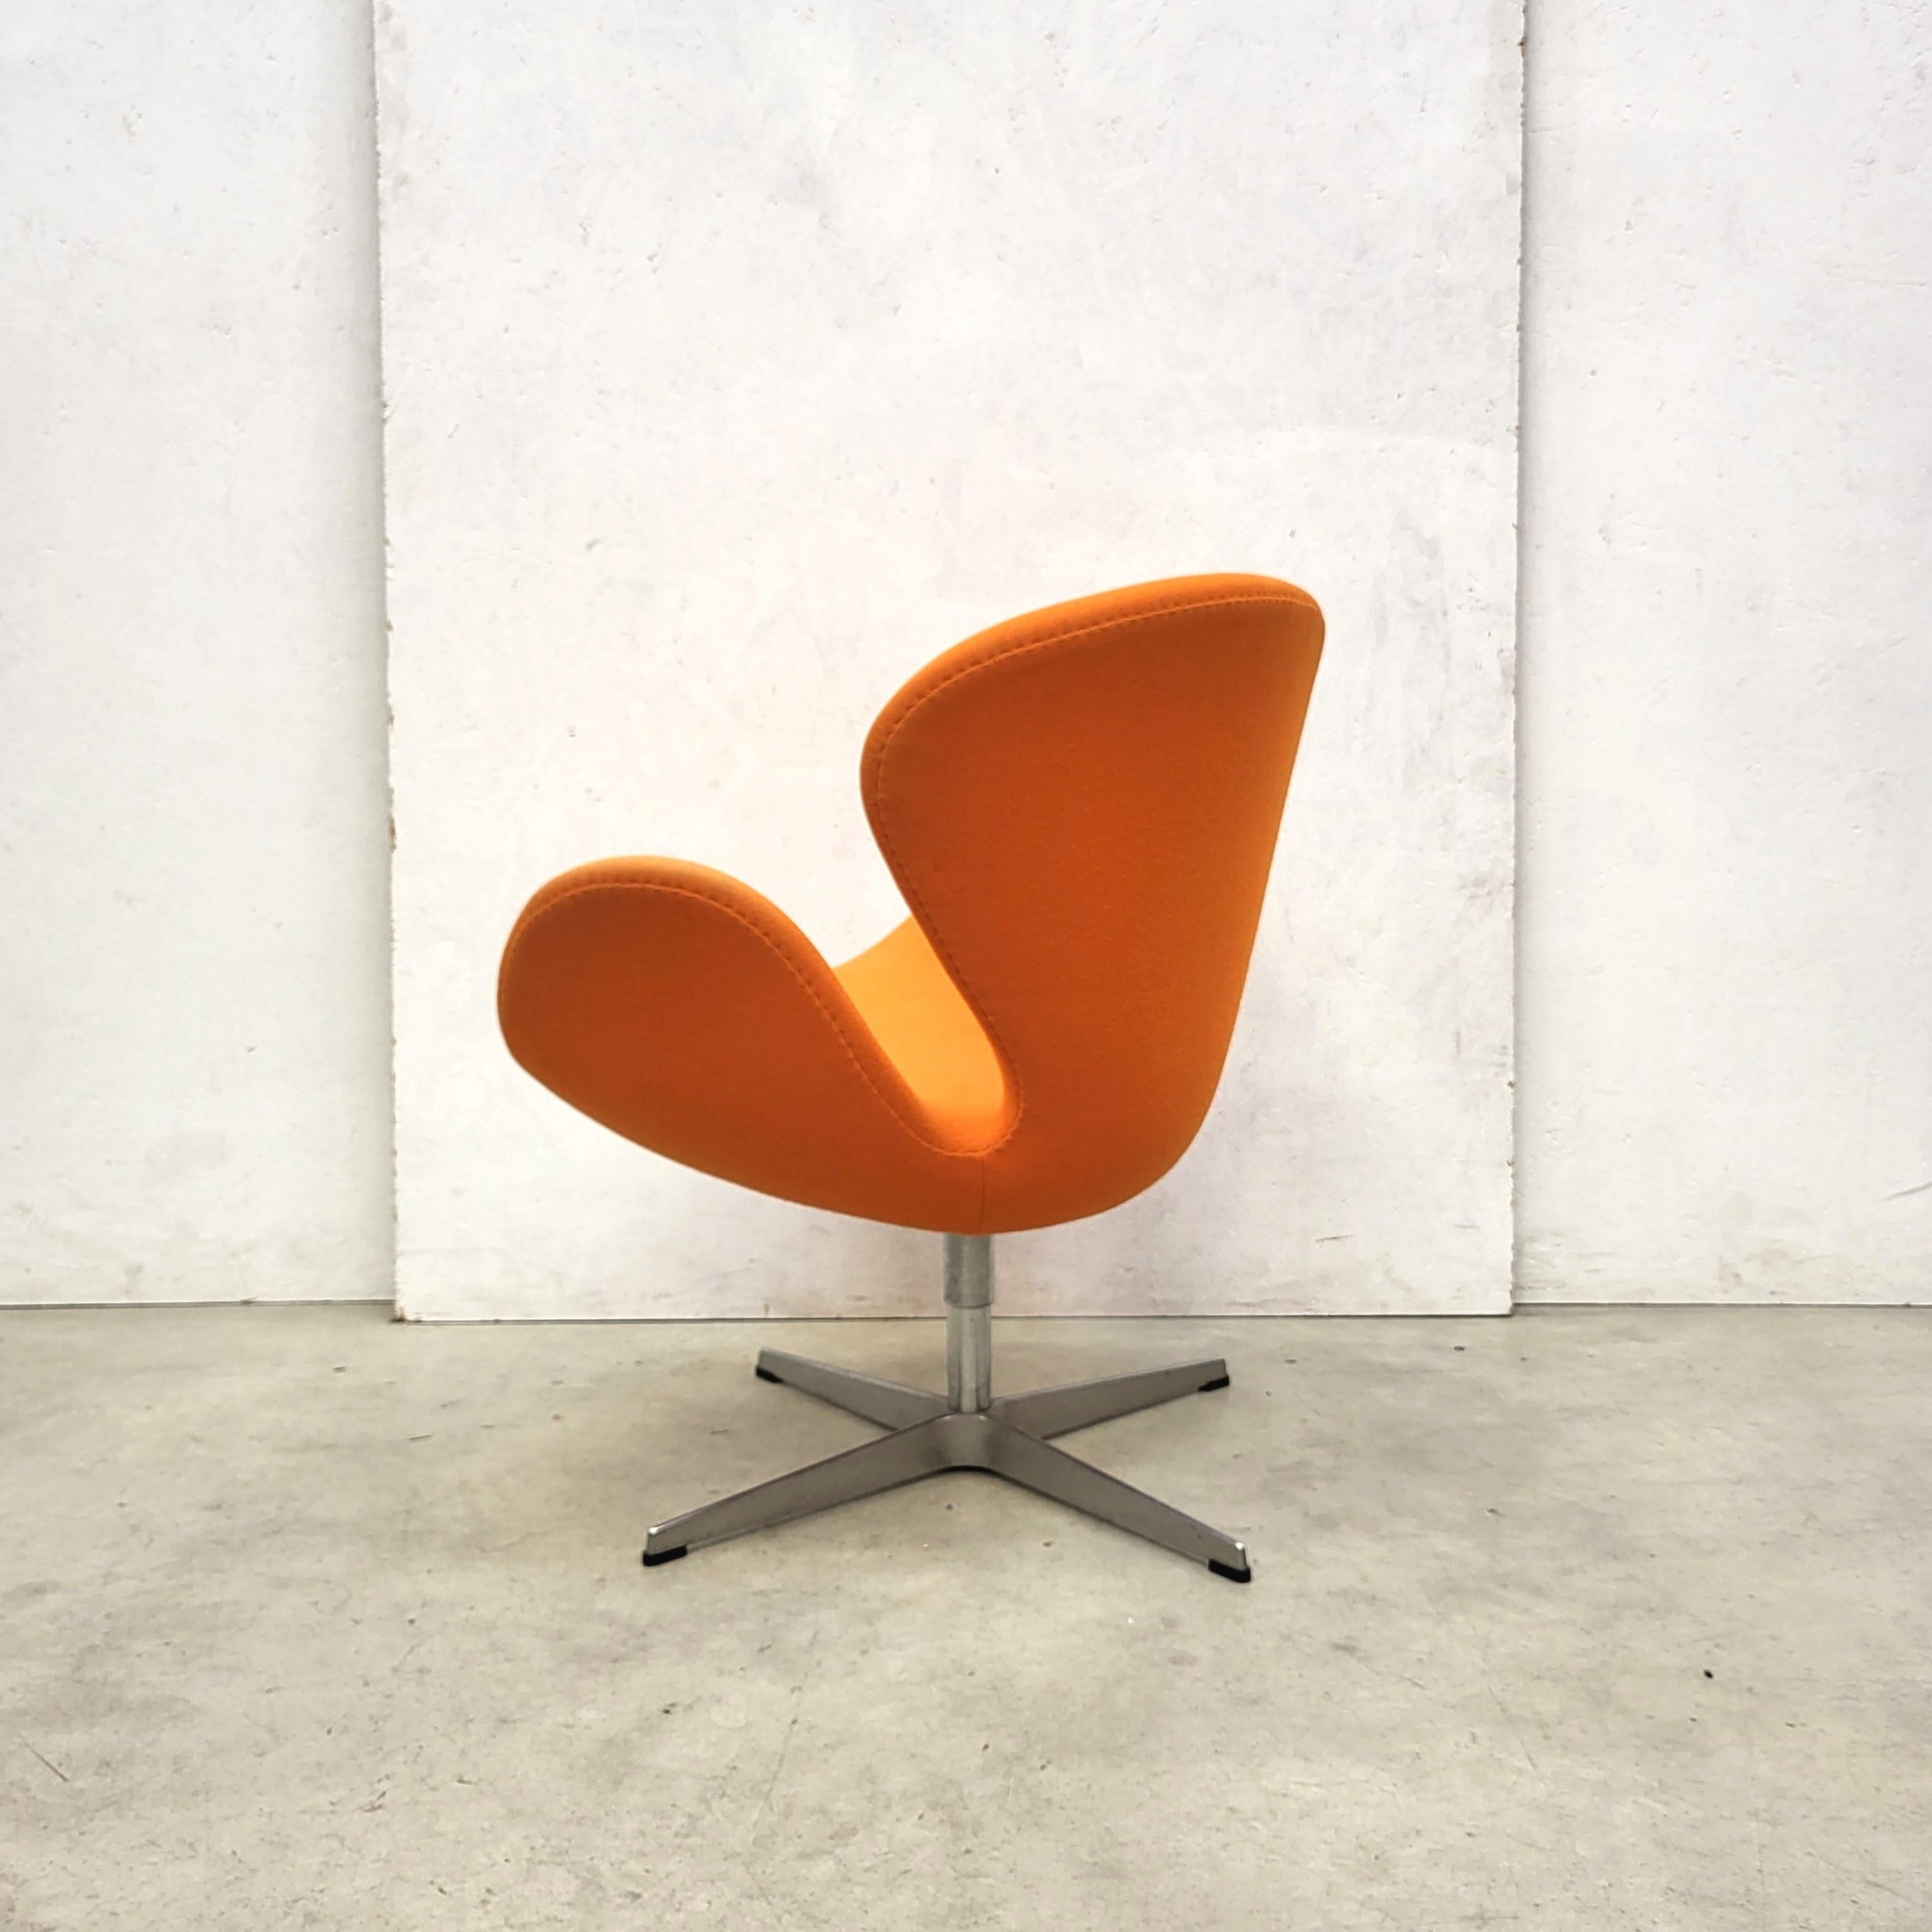 Aluminum Pair Swan Chair by Arne Jacobsen for Fritz Hansen 2006 Model